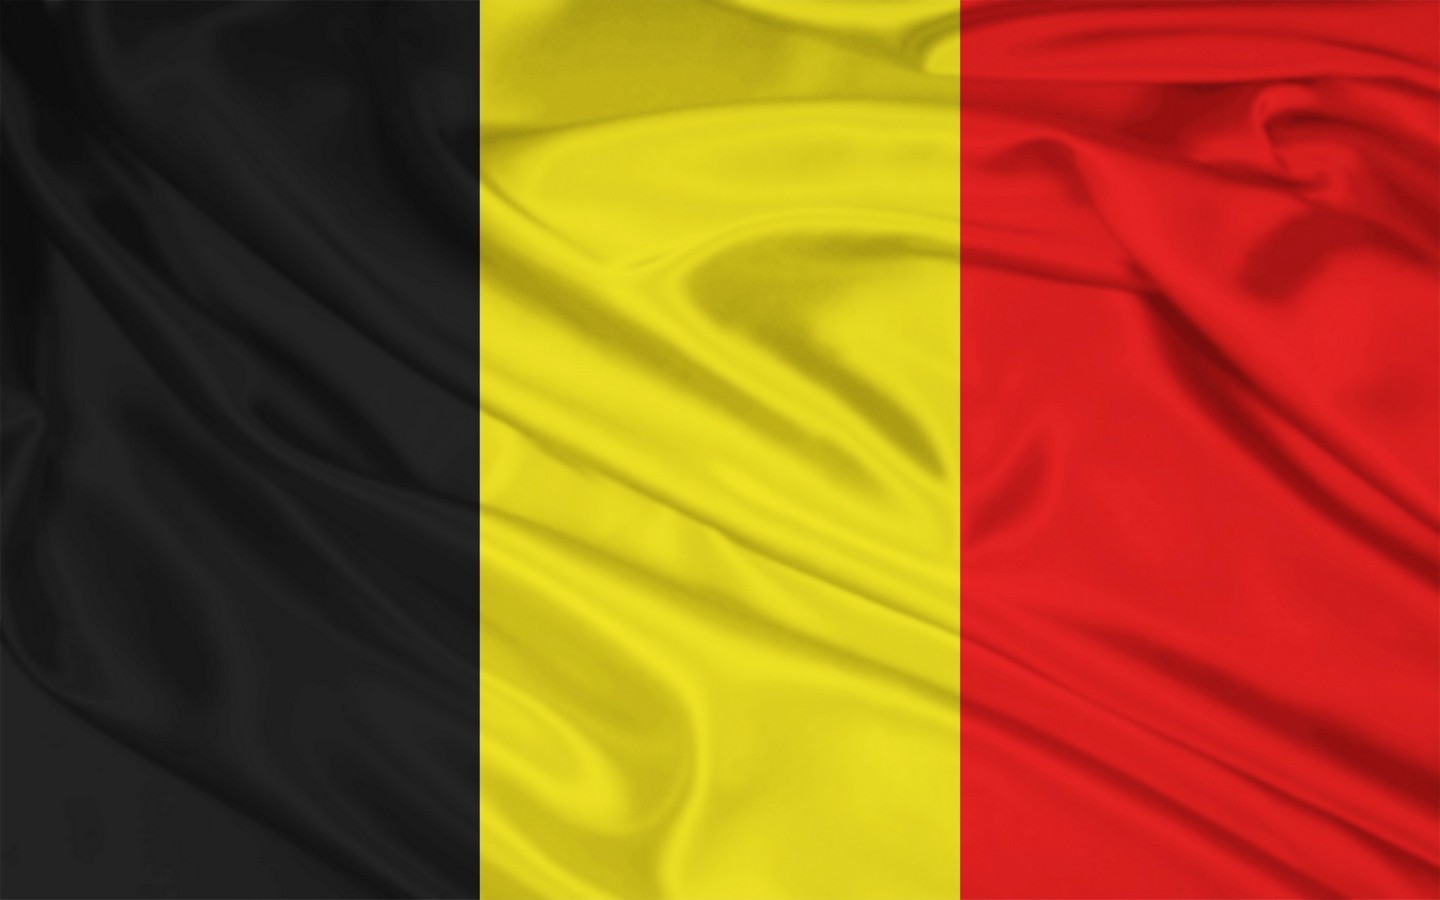 نرخ تورم بلژیک به 0.46 درصد رسید